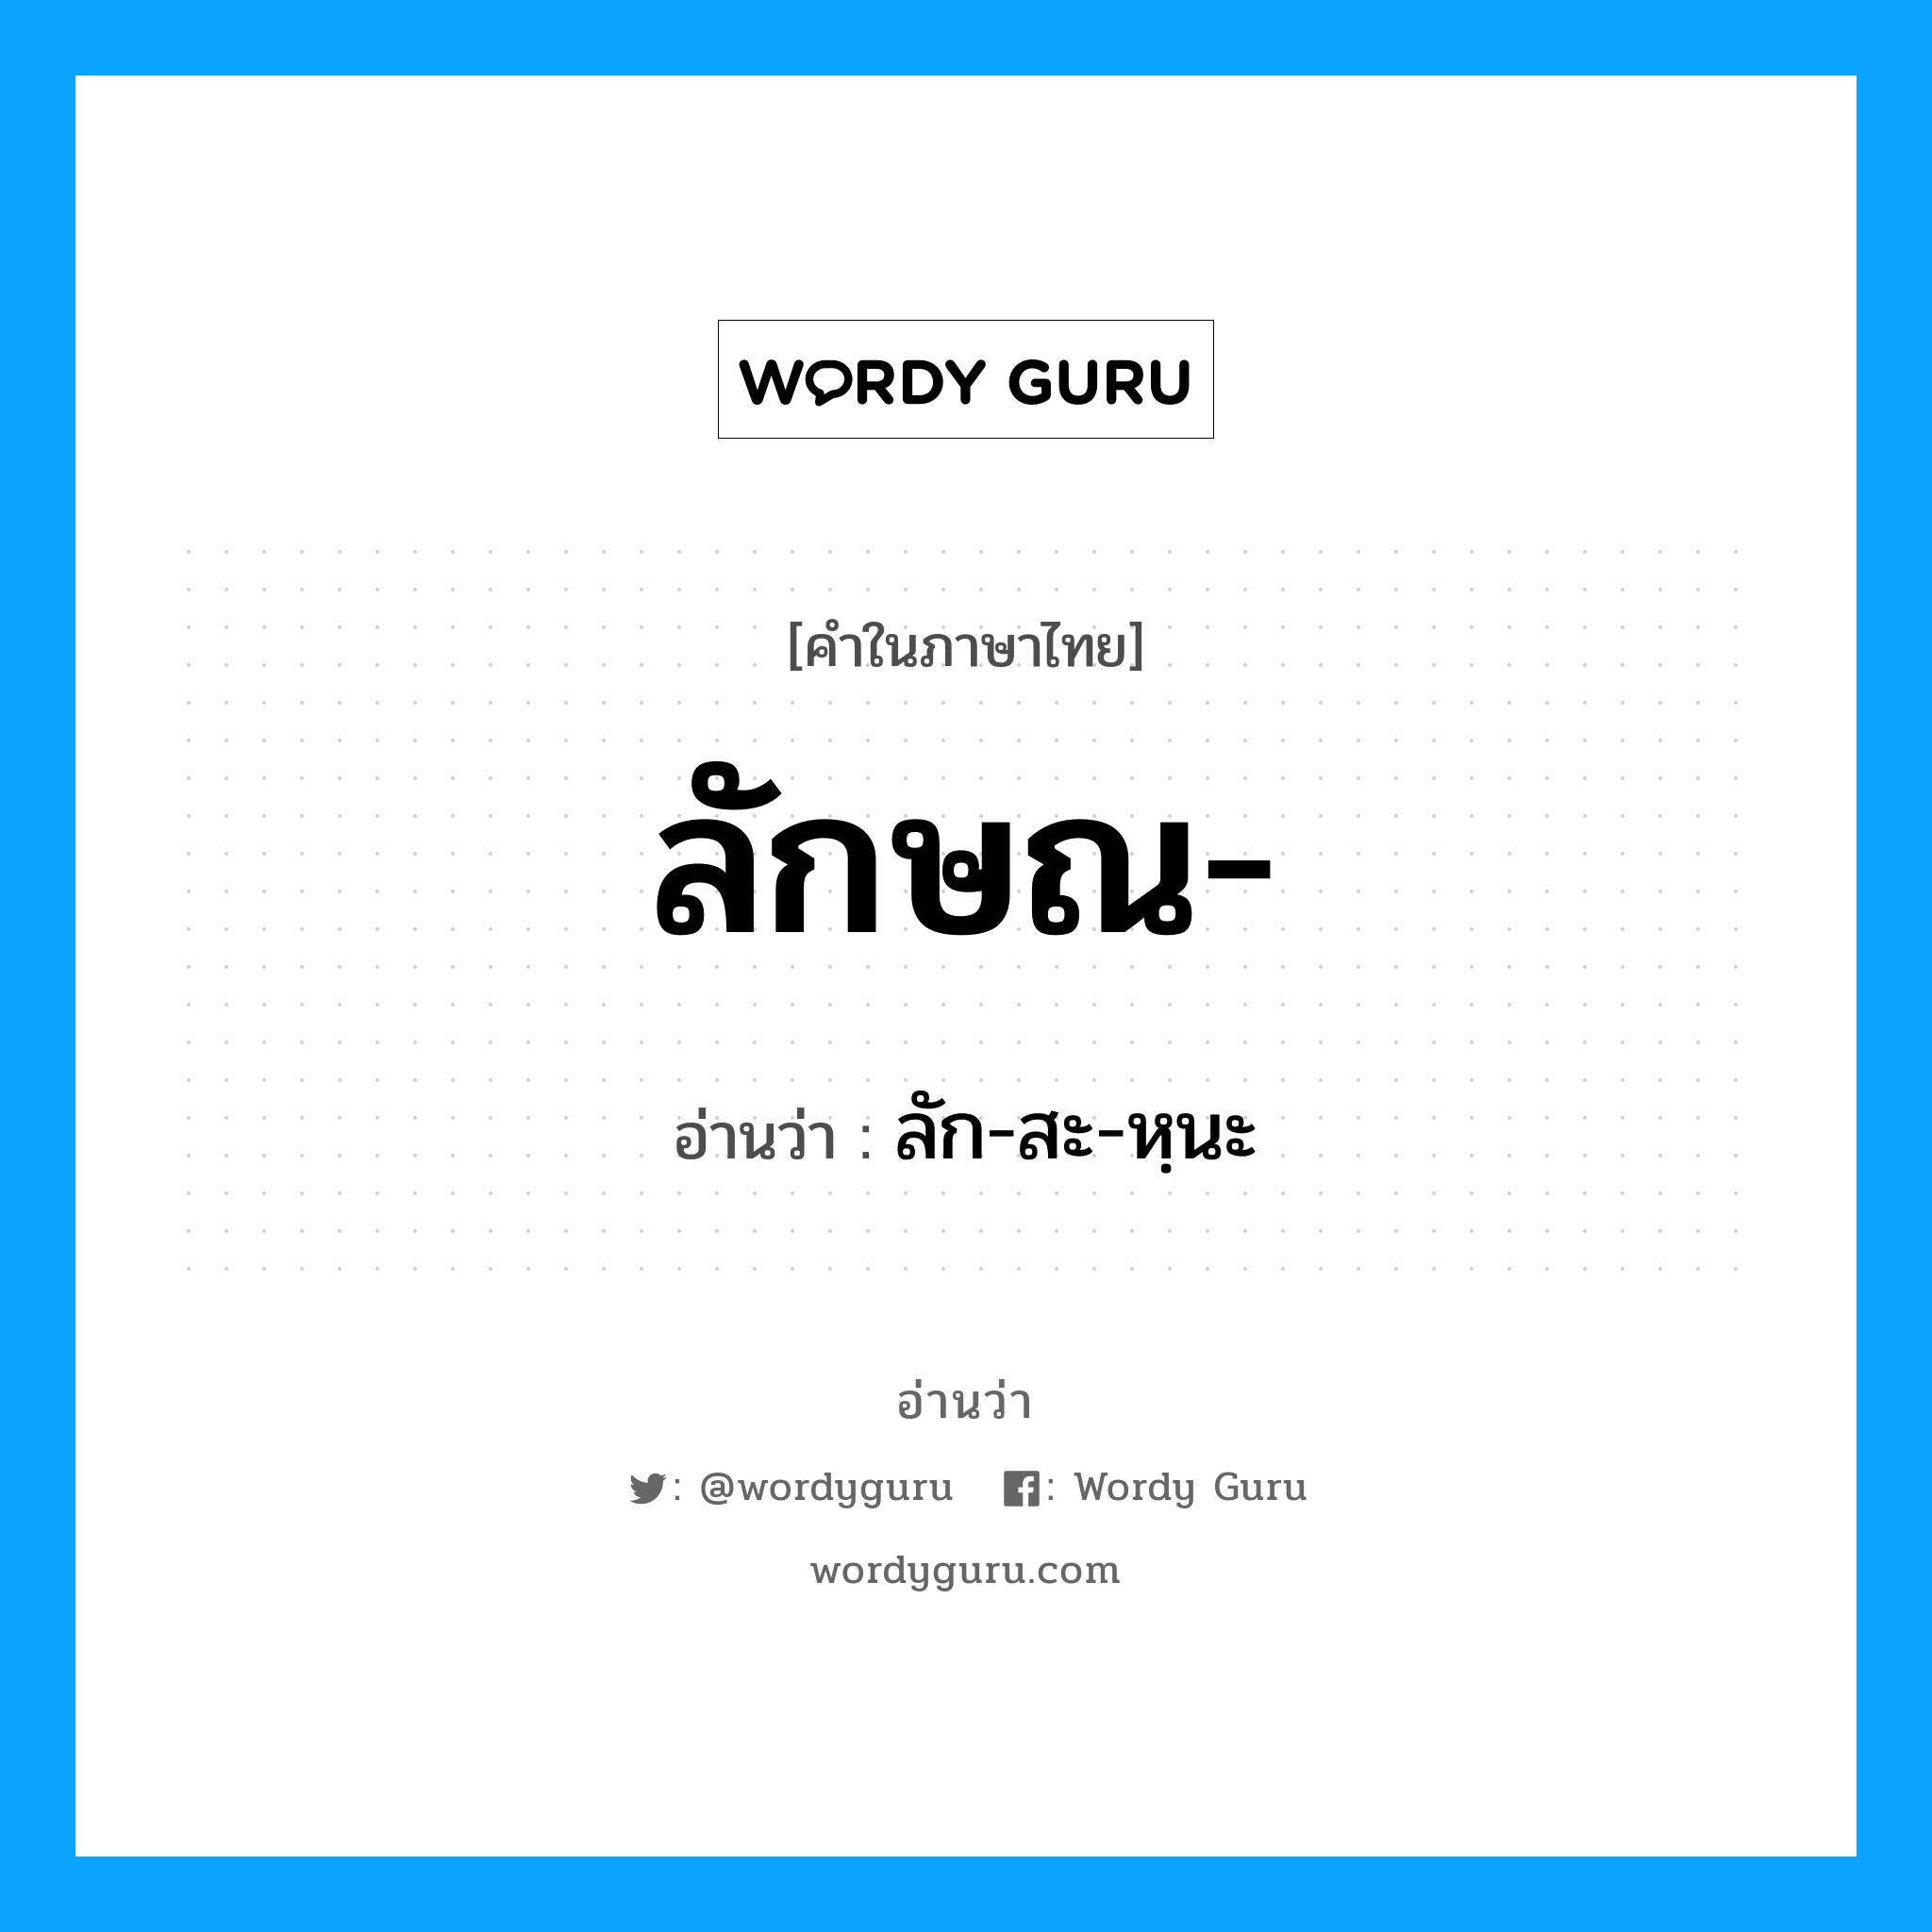 ลัก-สะ-หฺนะ เป็นคำอ่านของคำไหน?, คำในภาษาไทย ลัก-สะ-หฺนะ อ่านว่า ลักษณ-